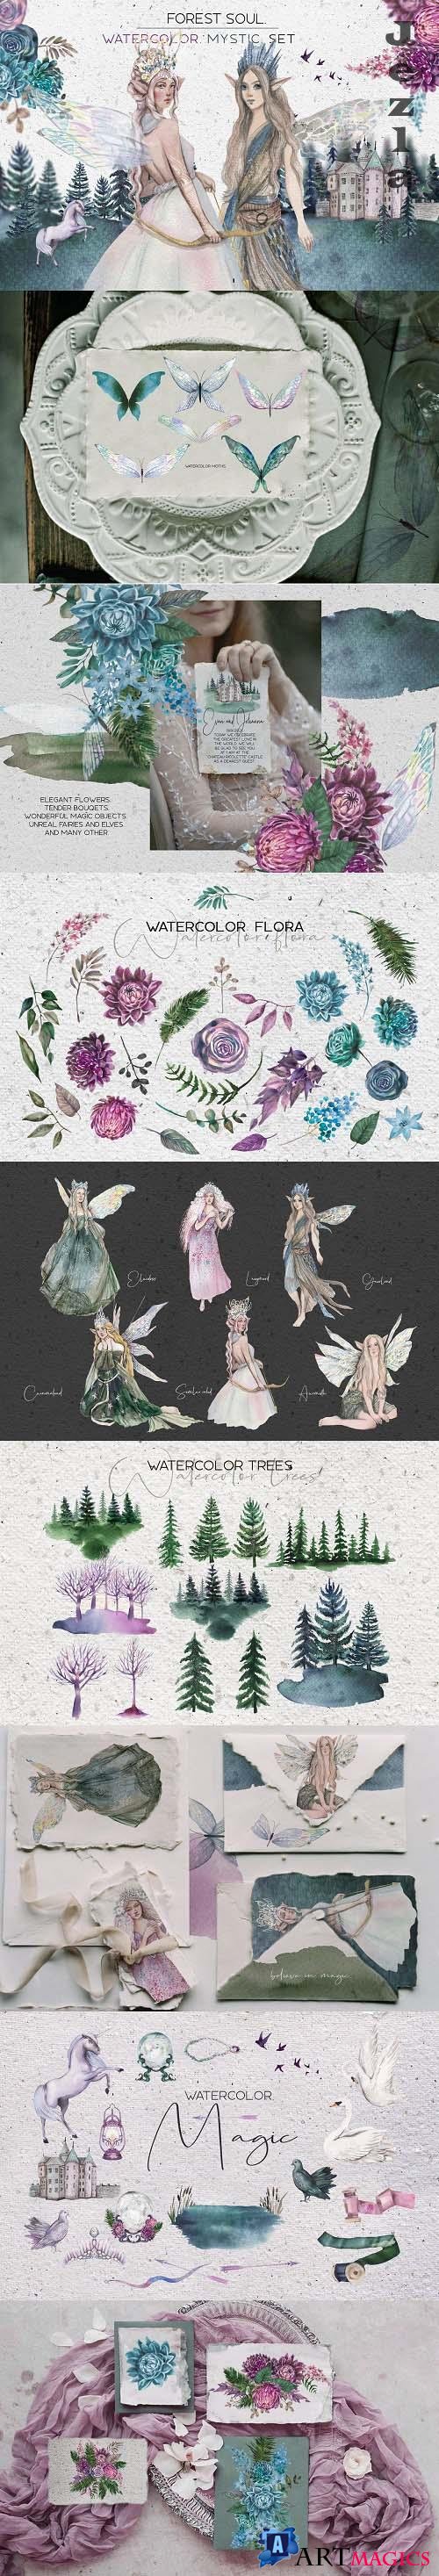 Forest soul - watercolor set - 4875318